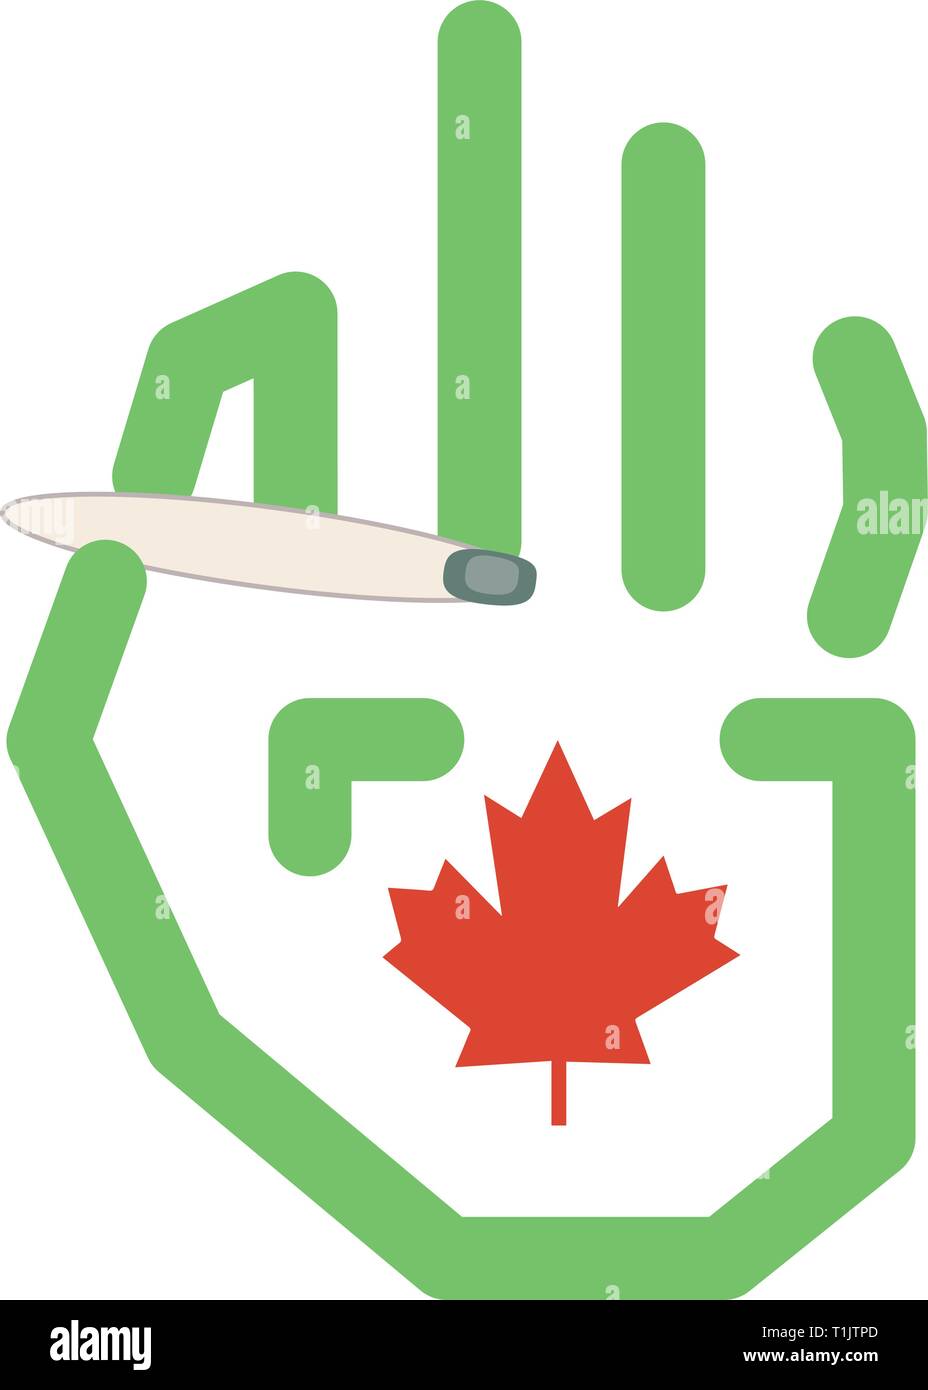 Grafica in stile linea mano & maple leaf tenendo un maijuana giunto con una bandiera canadese style maple leaf sul palm Illustrazione Vettoriale